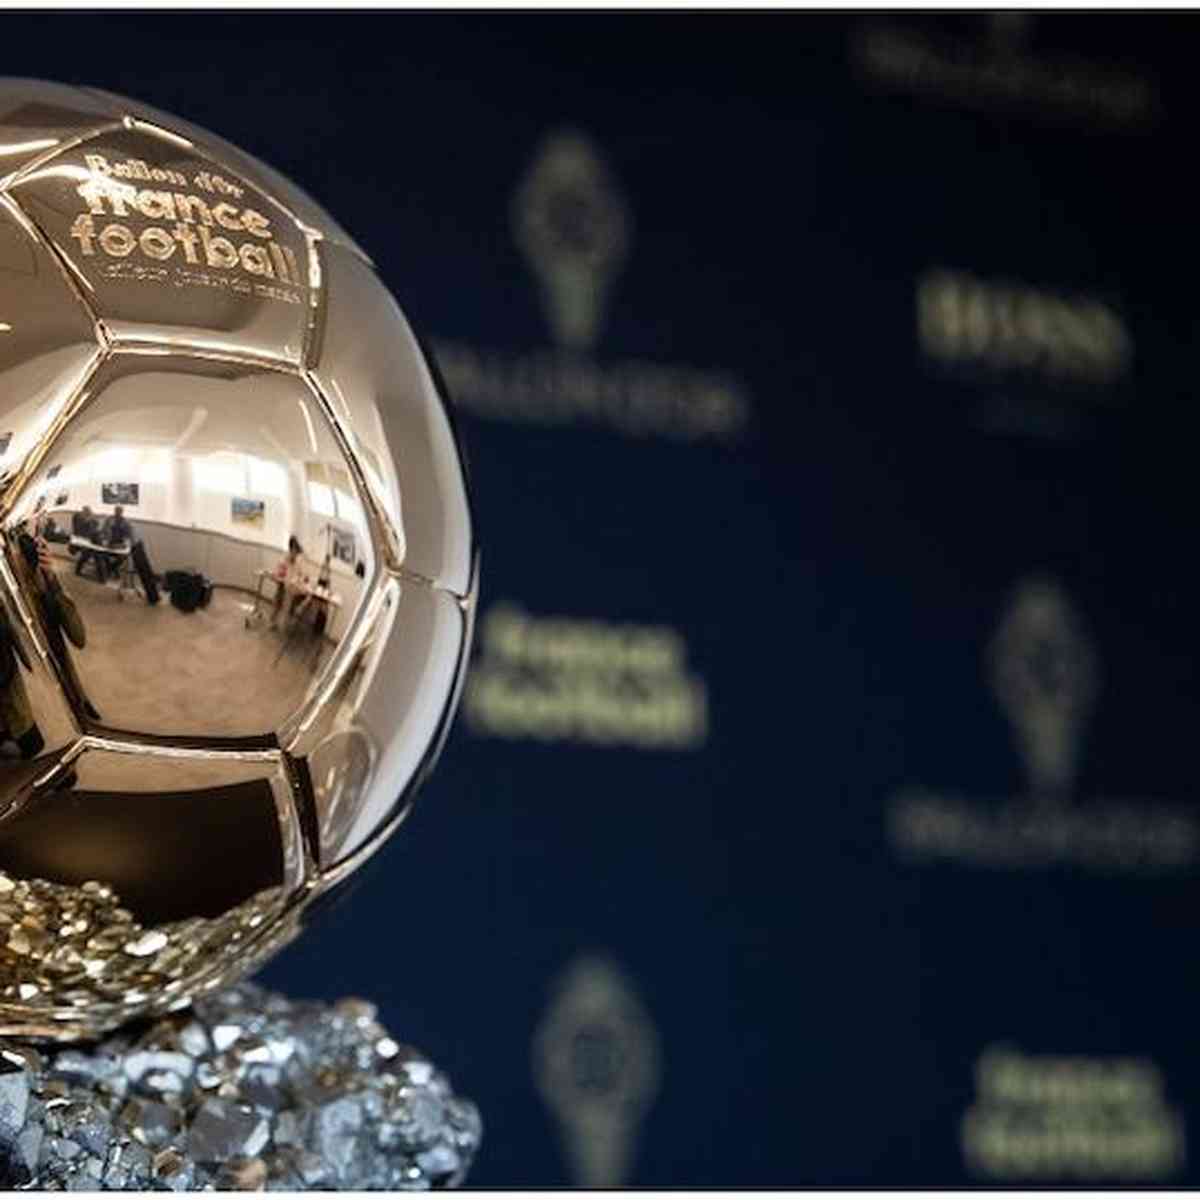 Bola de Ouro 2023: onde assistir à premiação de melhor jogador do mundo ·  Notícias da TV